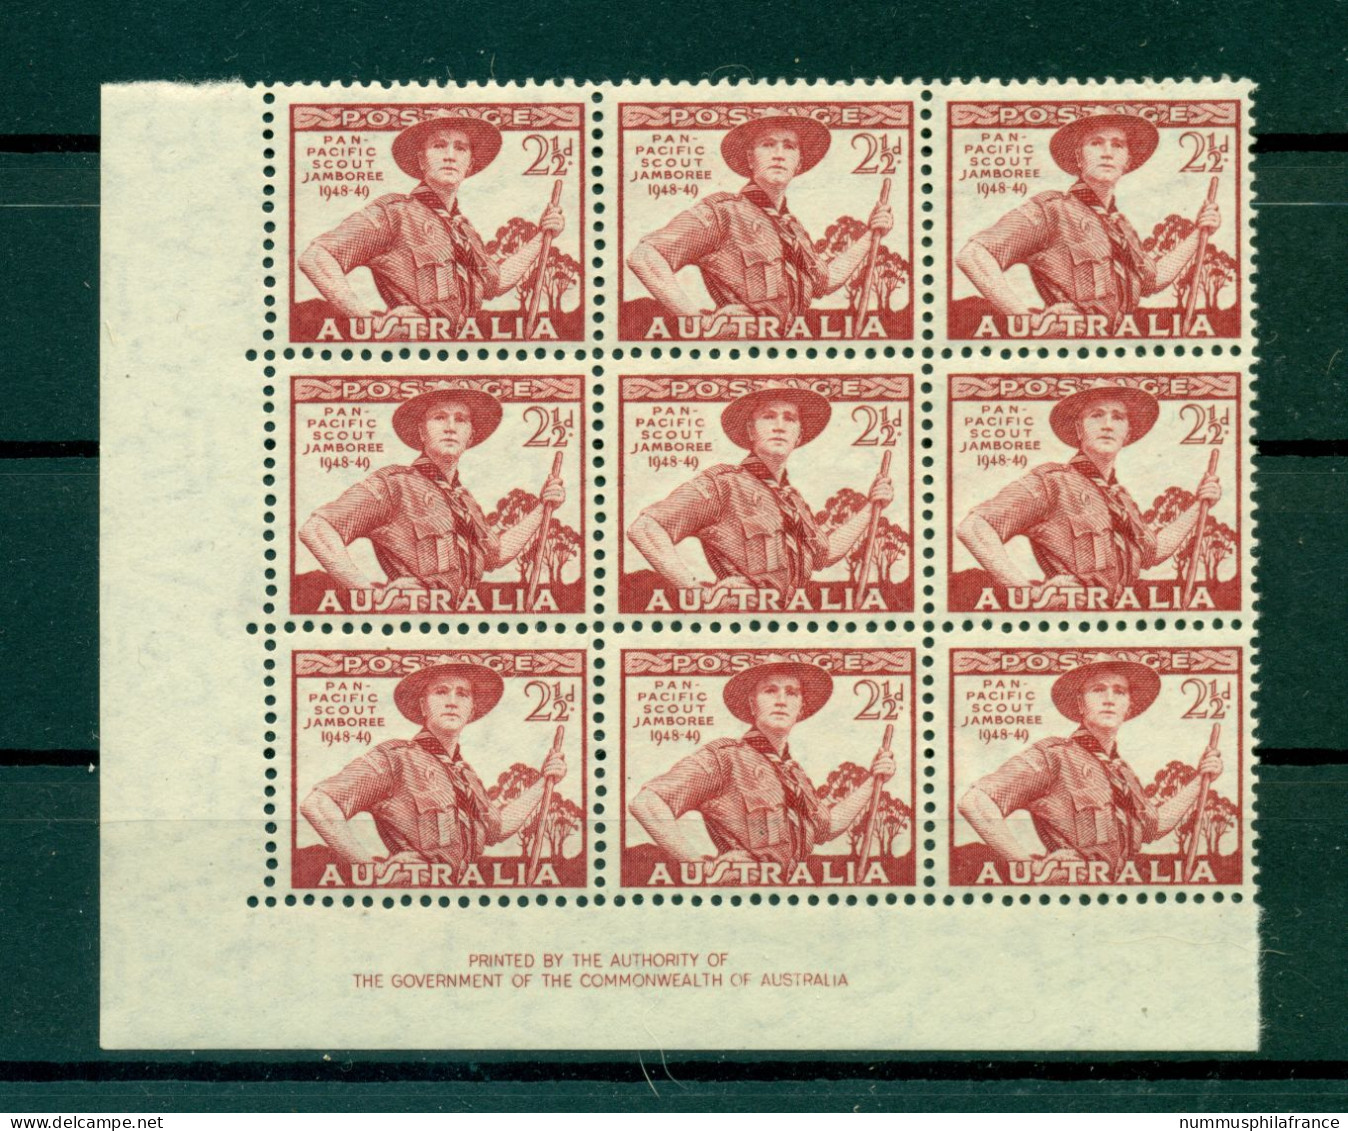 Australie 1948 - Y & T N. 163 - Jamboree Du Pacifique (Michel N. 193) - Mint Stamps